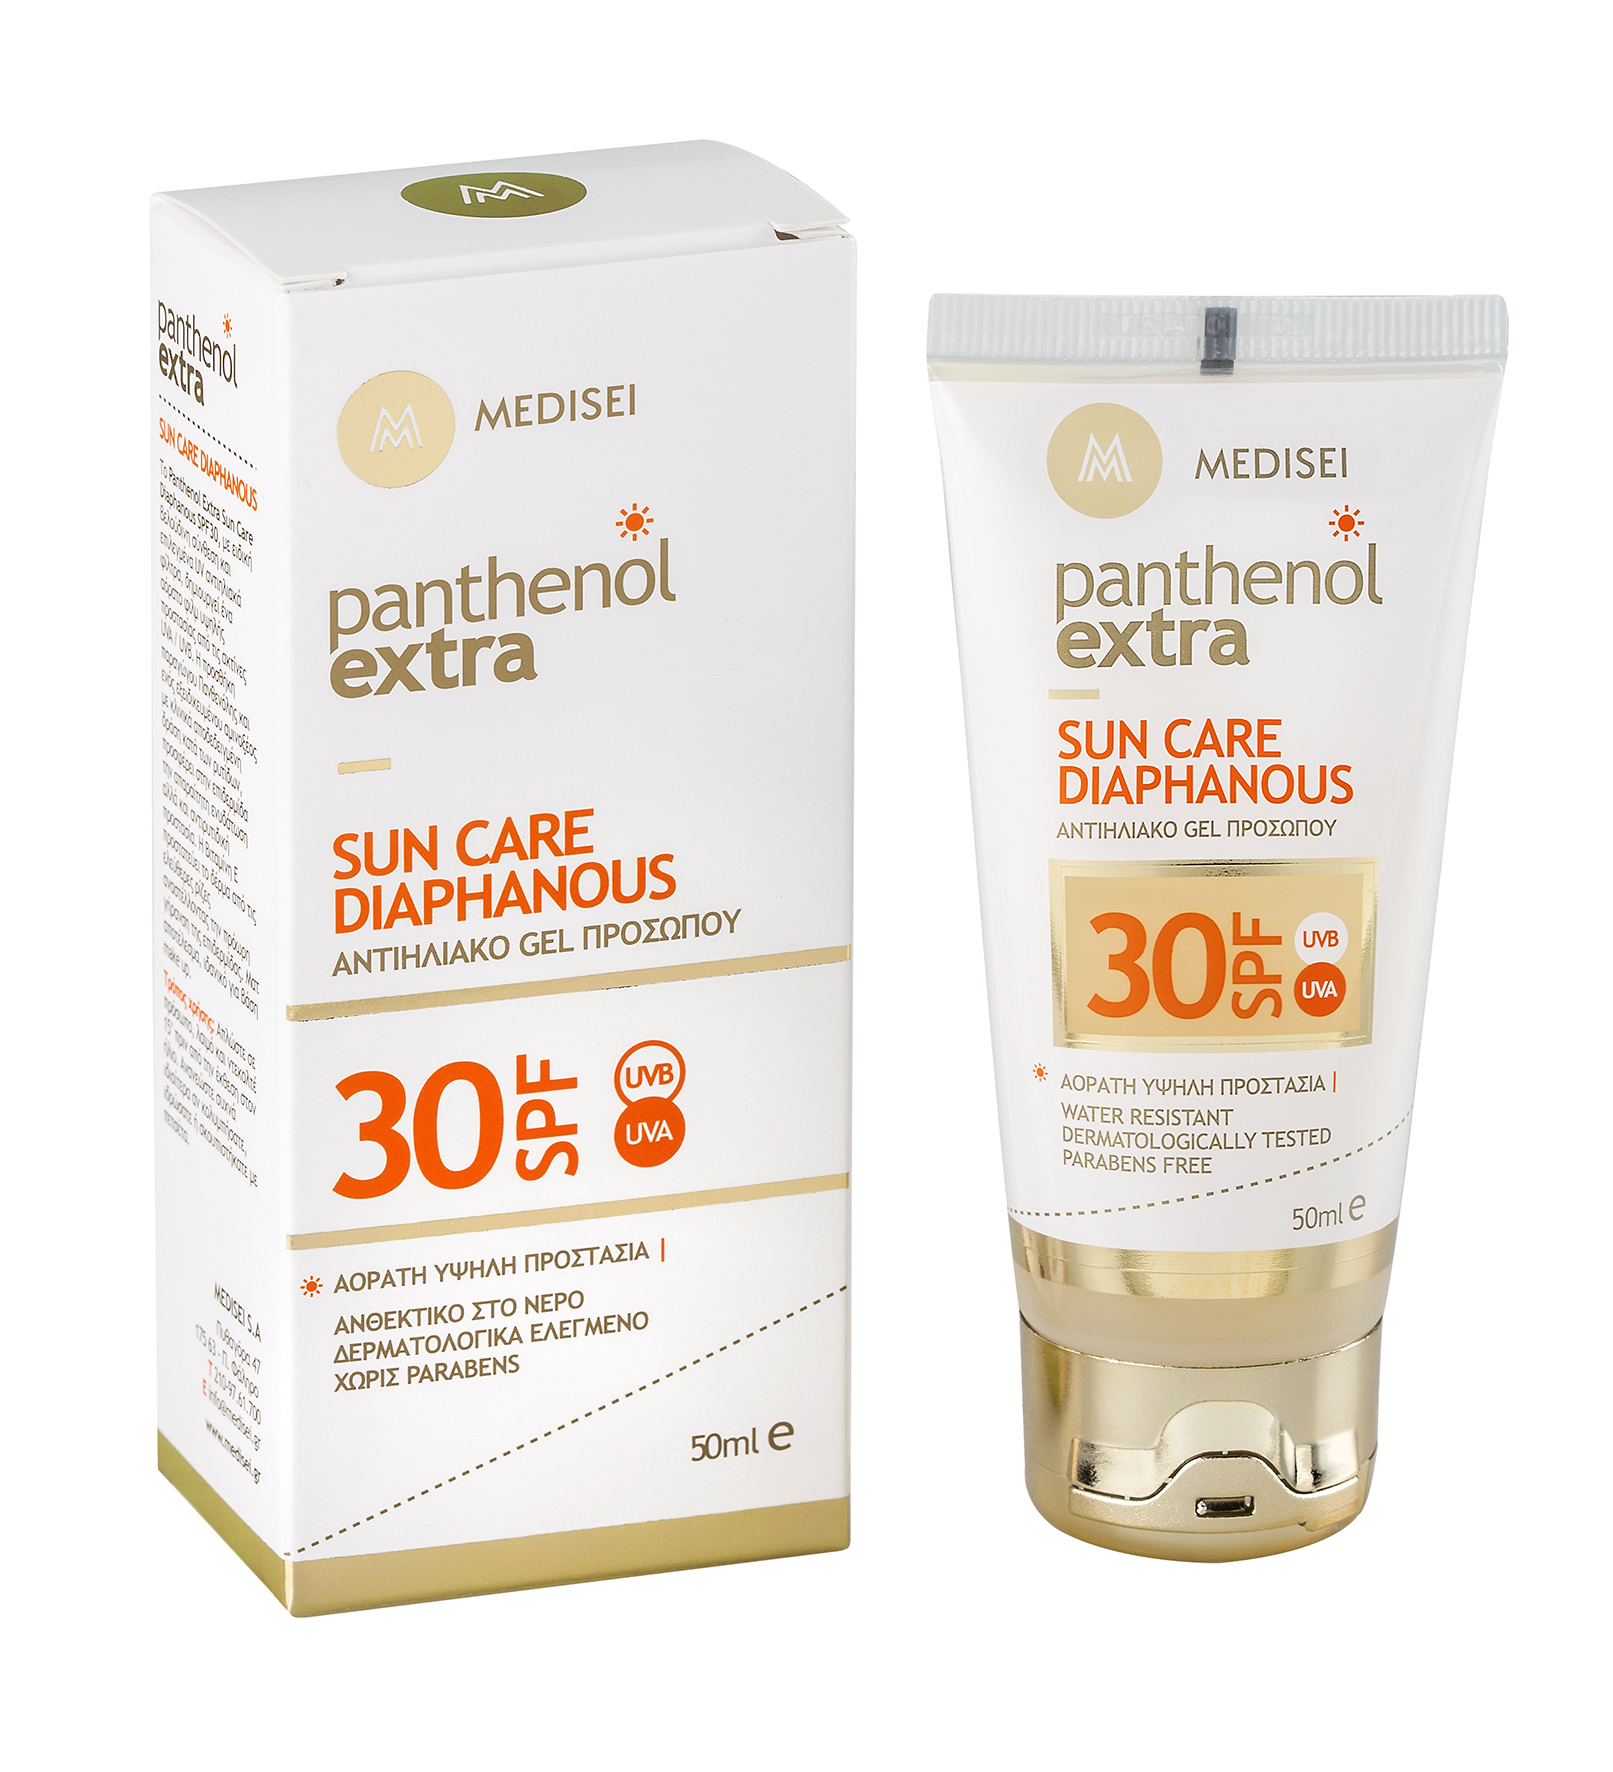 Panthenol Extra Sun Care Diaphanous 01